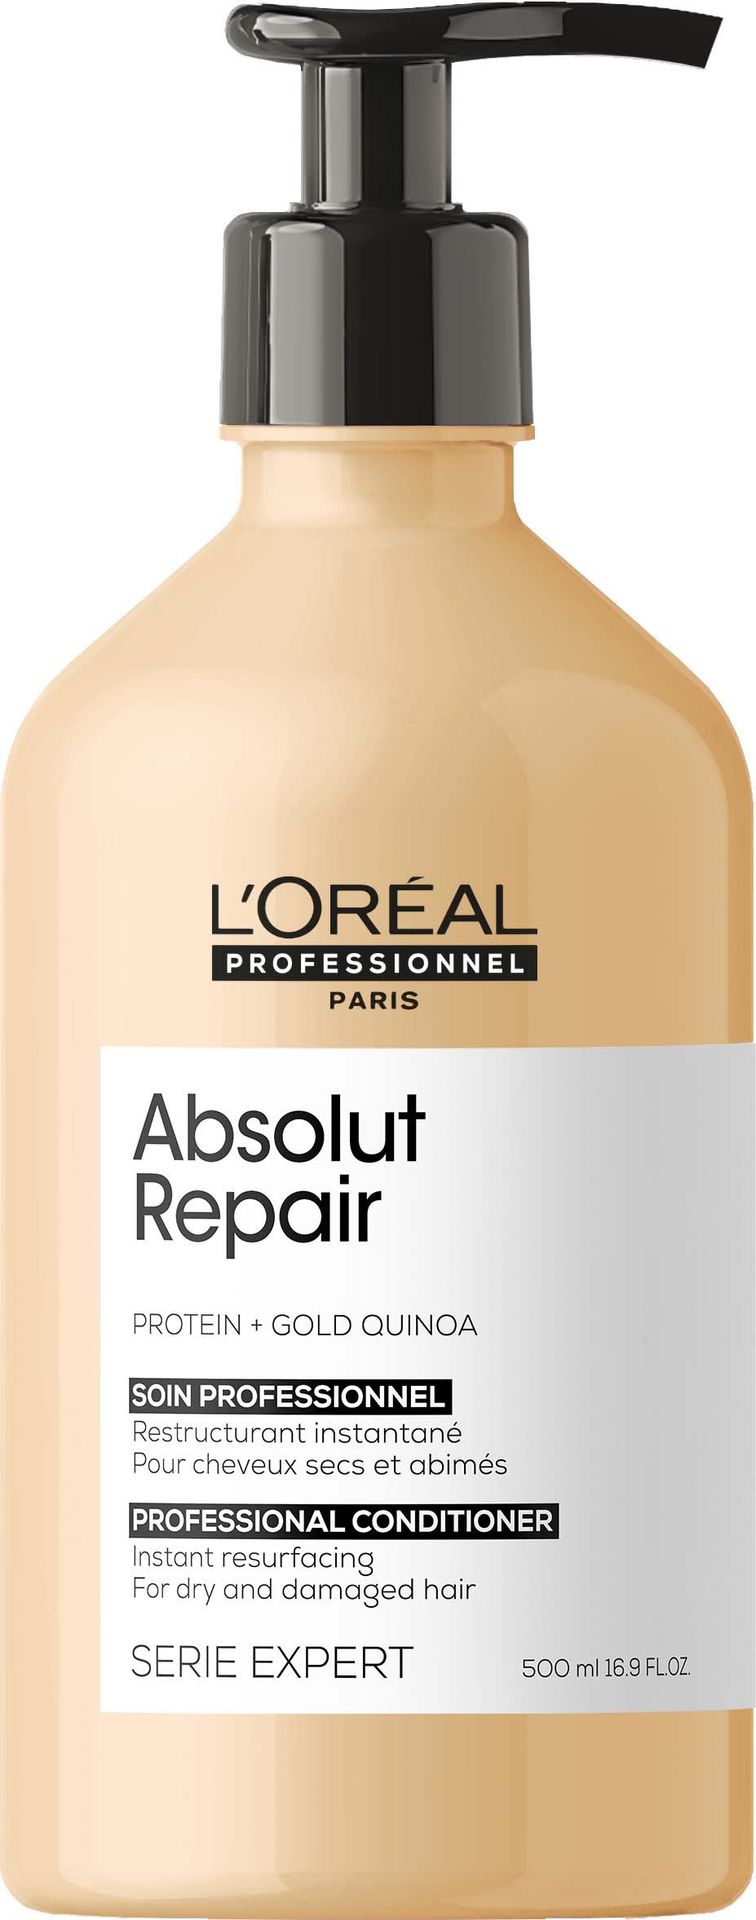 Loreal Absolut Repair Odżywka regenerująca włosy 500 ml